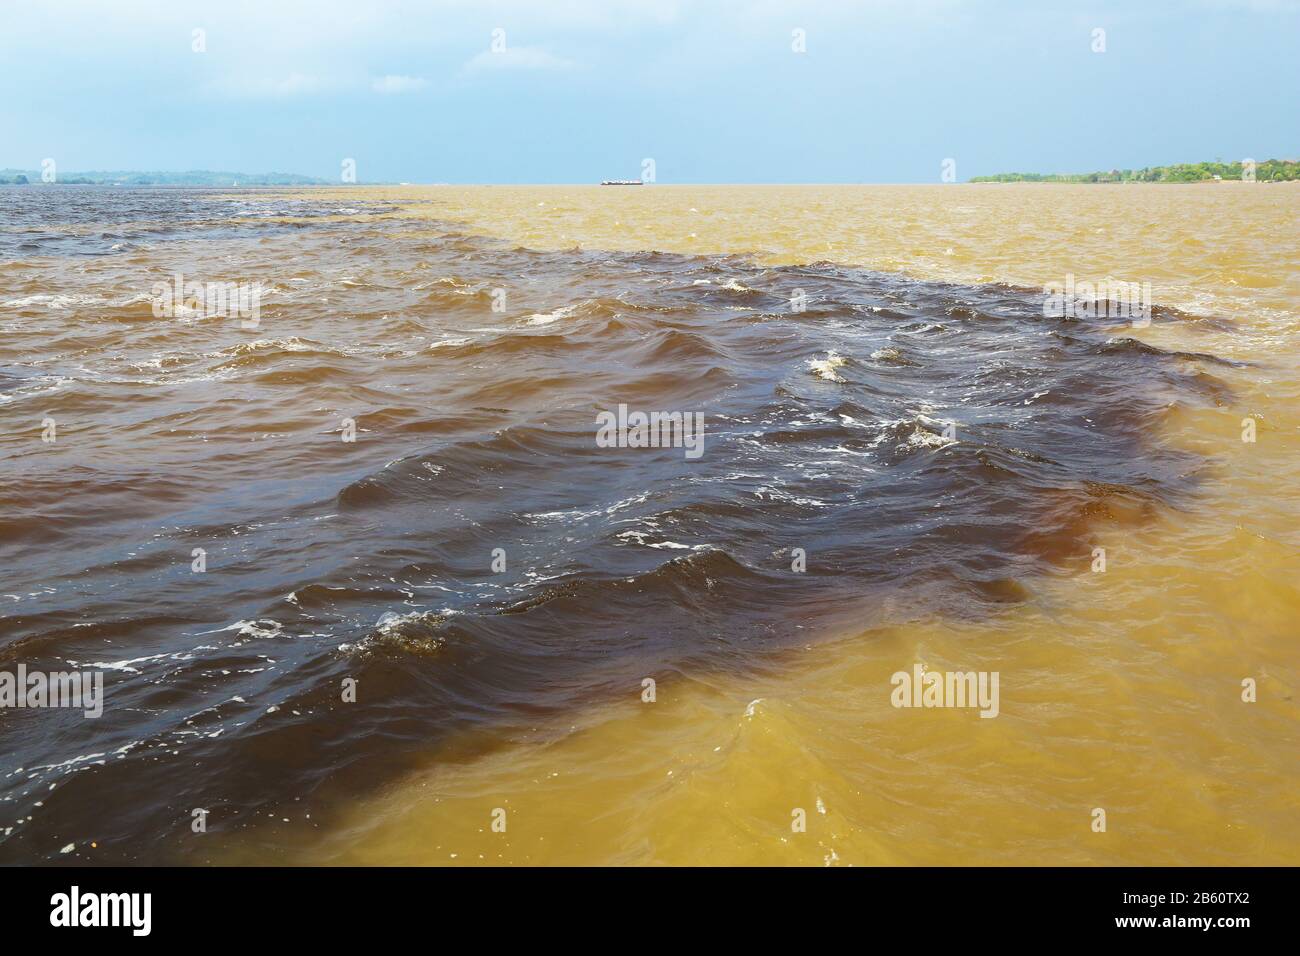 Amazon & Rio Negro Waters.in der Nähe von Manaus befindet sich der Zusammenfluss zwischen Rio Negro, einem Fluss mit sehr dunklem Wasser, und dem sandig gefärbten Amazonas-Fluss. Stockfoto